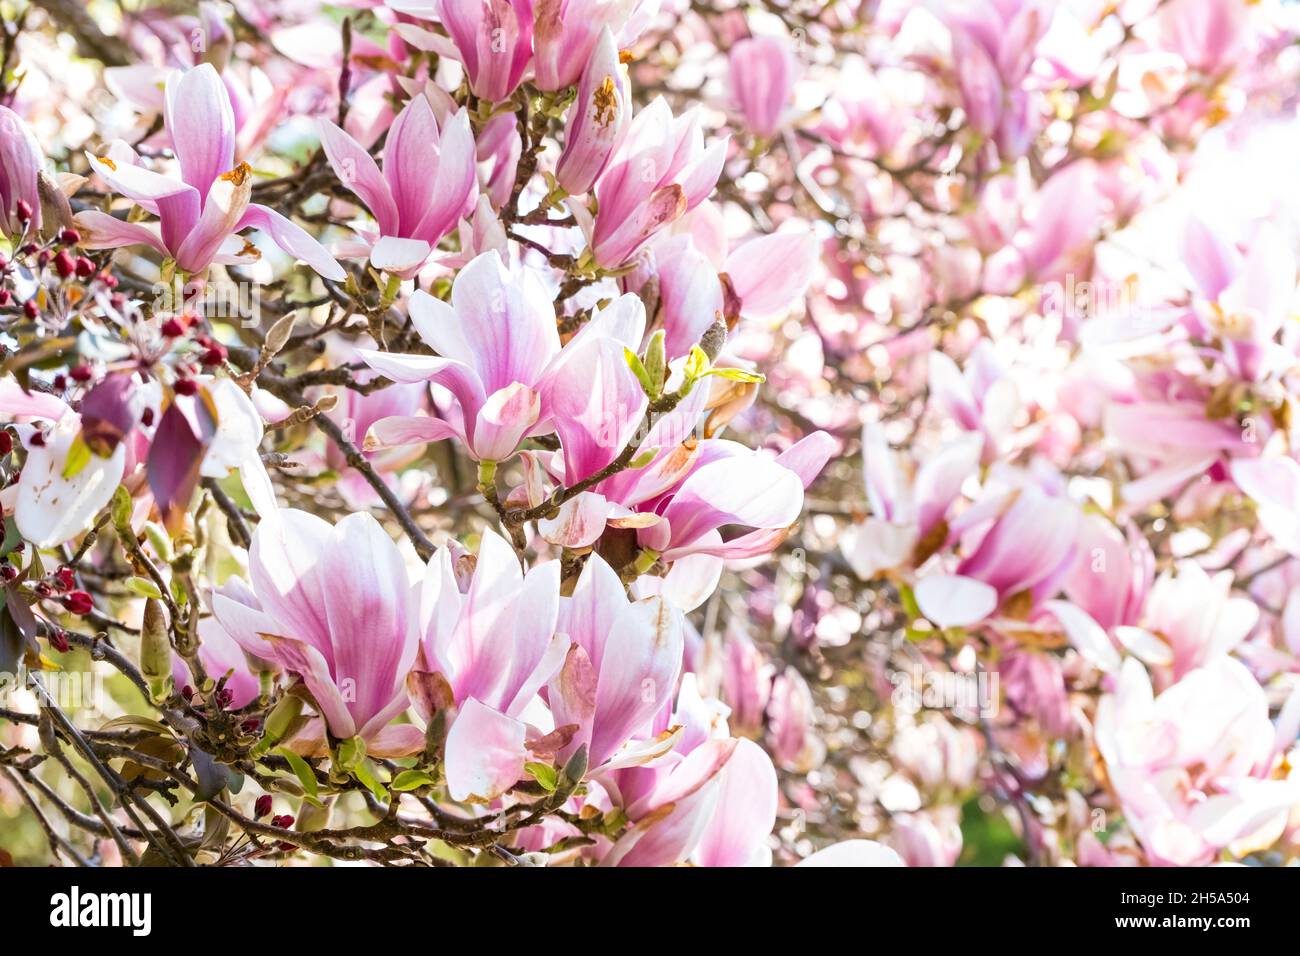 muchas flores de color rosa de magnolia en un árbol Foto de stock